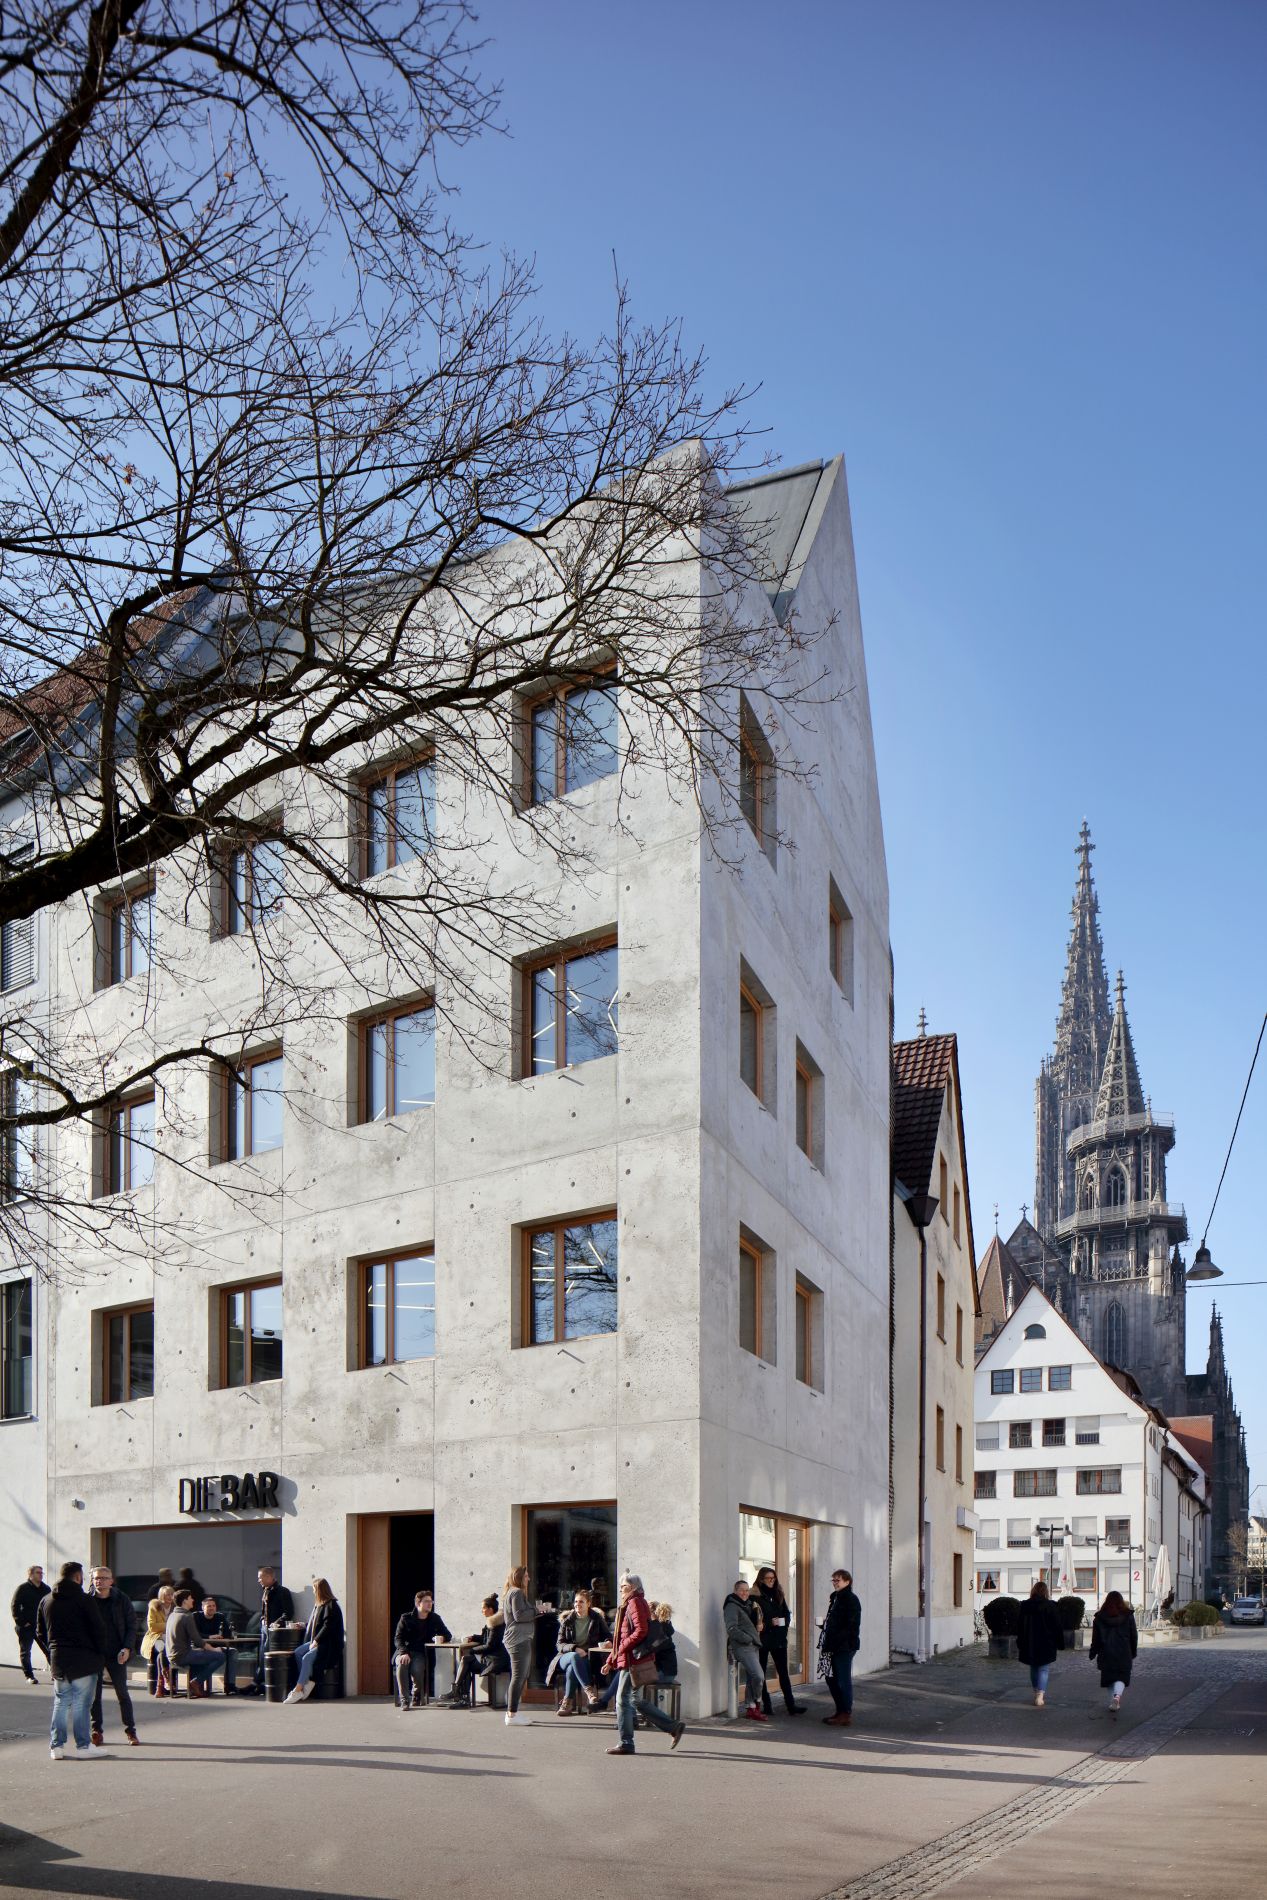 Die Abbildung zeigt von links in das Bild hineinragend das hoch aufragende, fünfgeschossige Wohn- und Geschäftshaus k5 in der Altstadt von Ulm. Es hat eine glatte Betonfassade, quadratische Fenster und ein Satteldach. Im Erdgeschoss befindet sich ein Café, draußen sind Personen an kleinen Tischen und Passanten. Rechts im Hintergrund sind die Türme des Ulmer Münsters zu sehen.